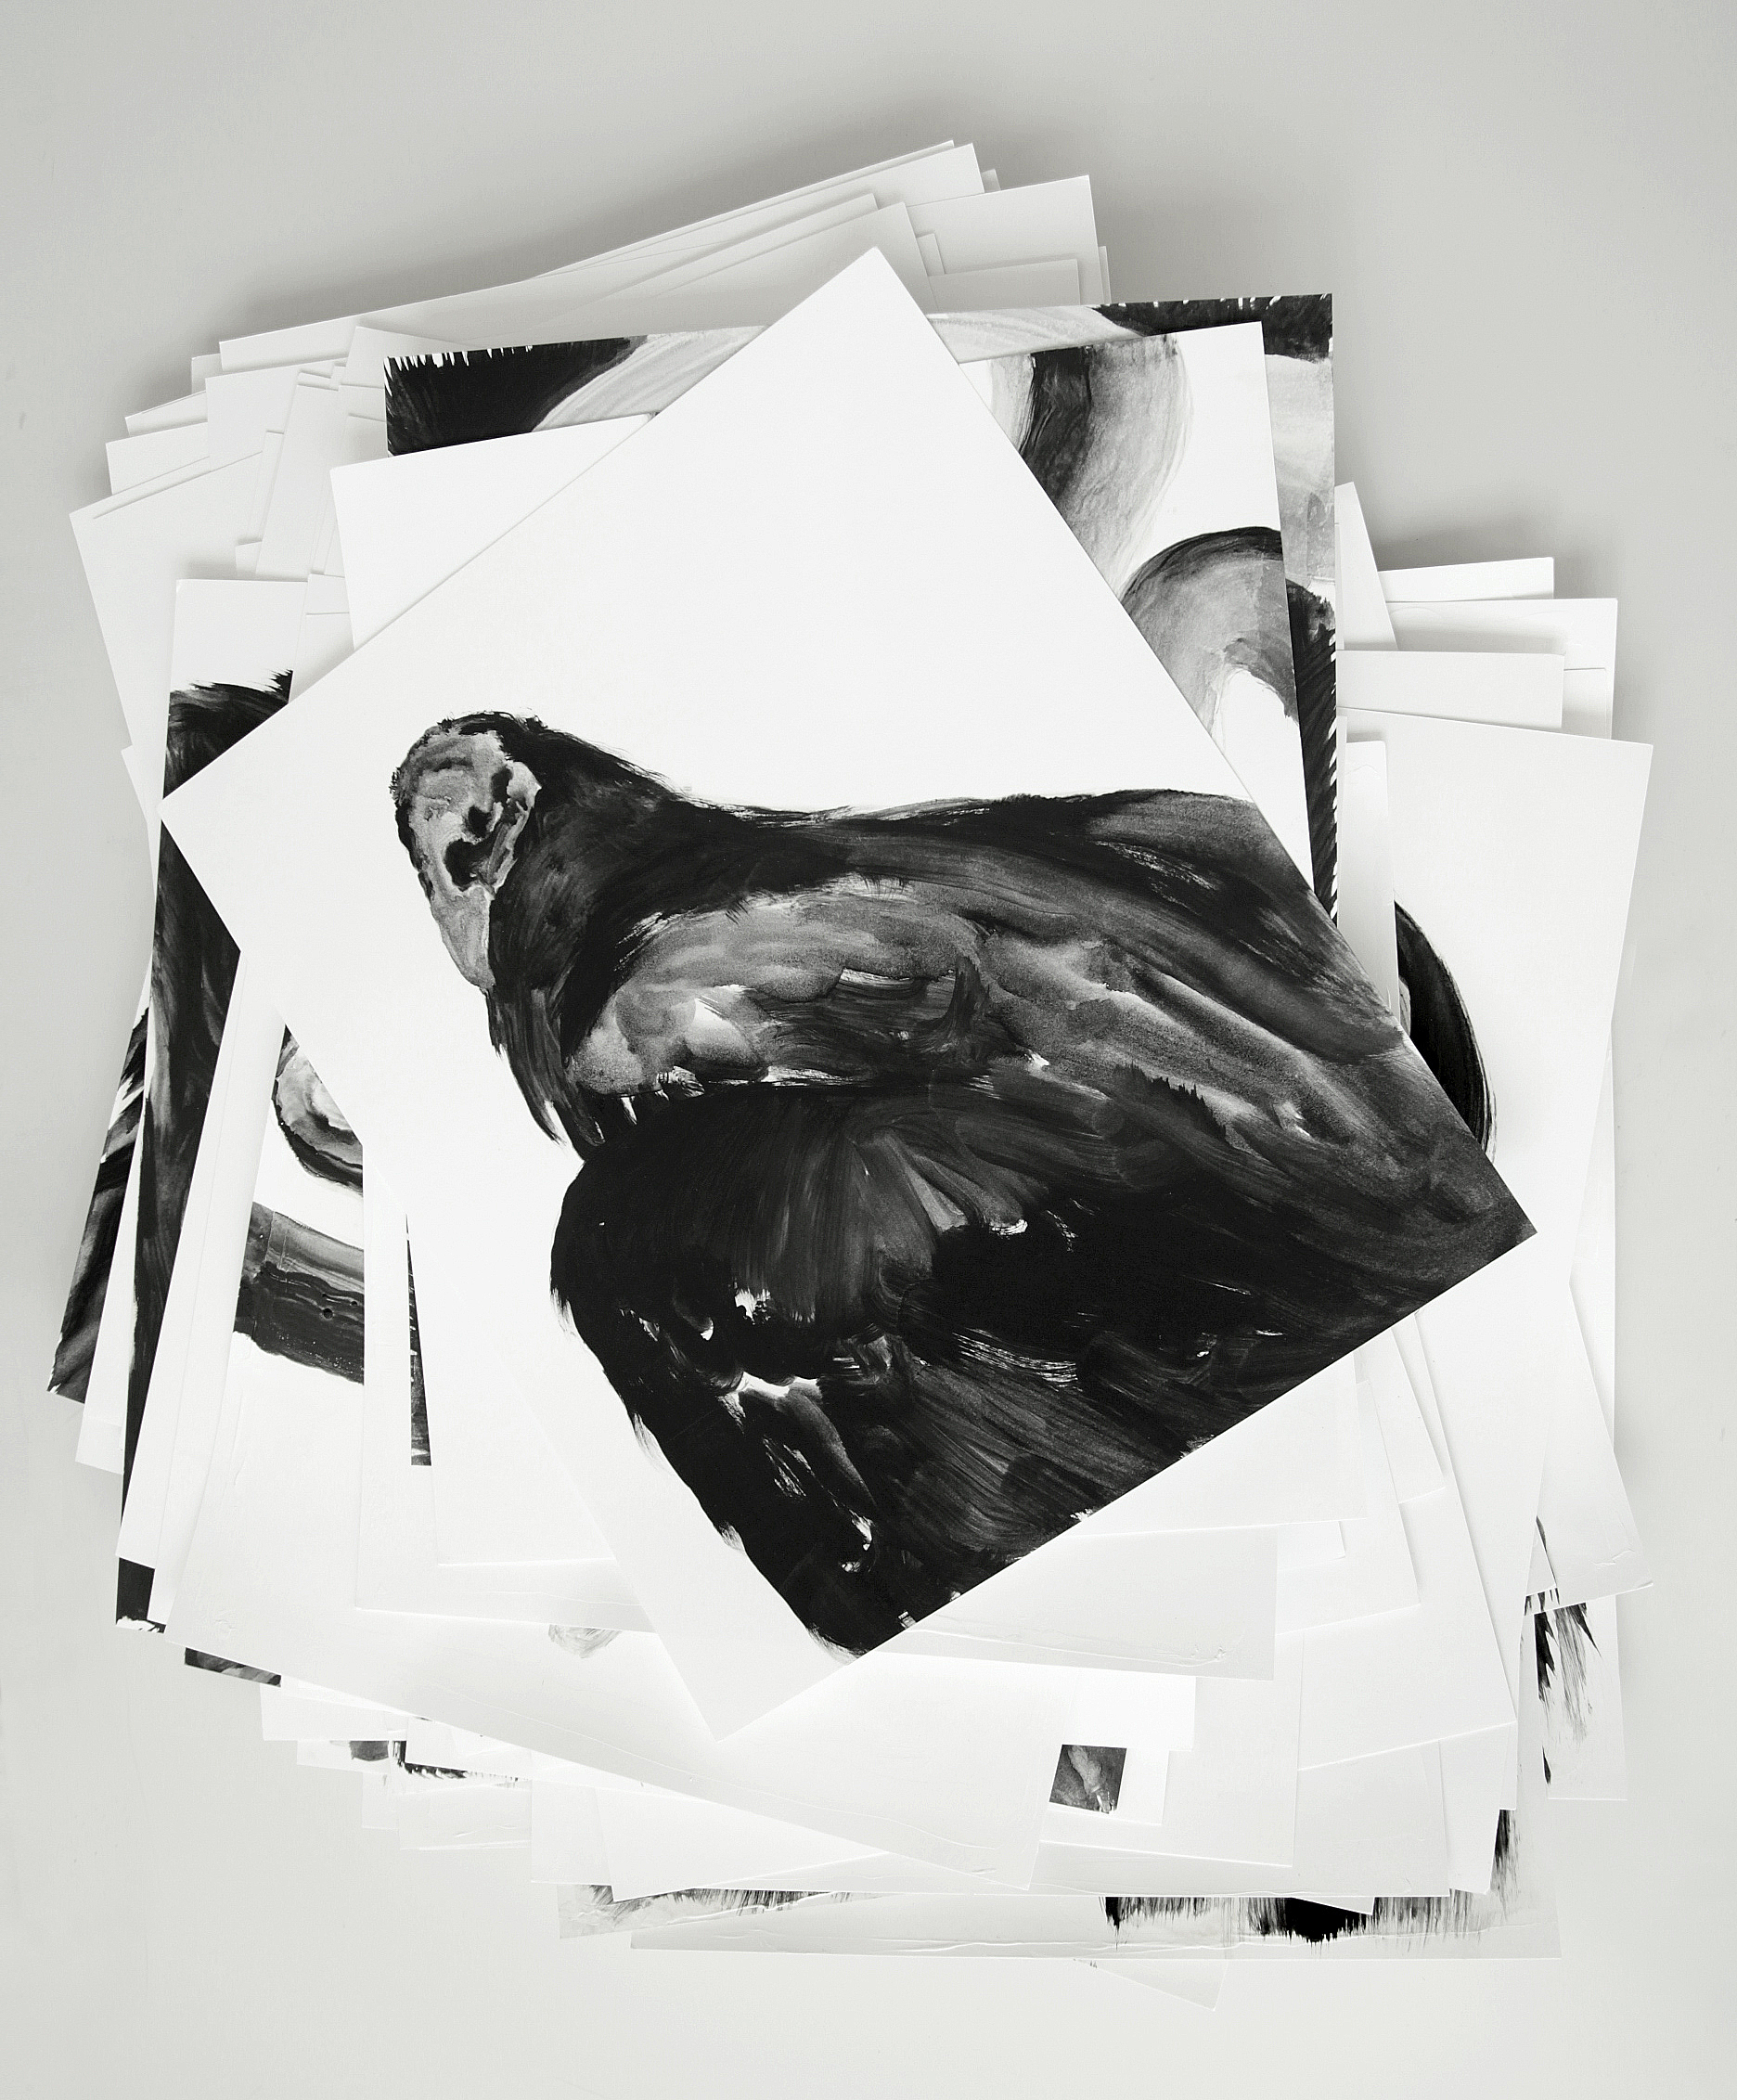  Vautours / Vultures  Huile sur papier / Oil on paper  12 X 16 in / 30 X 40 cm    